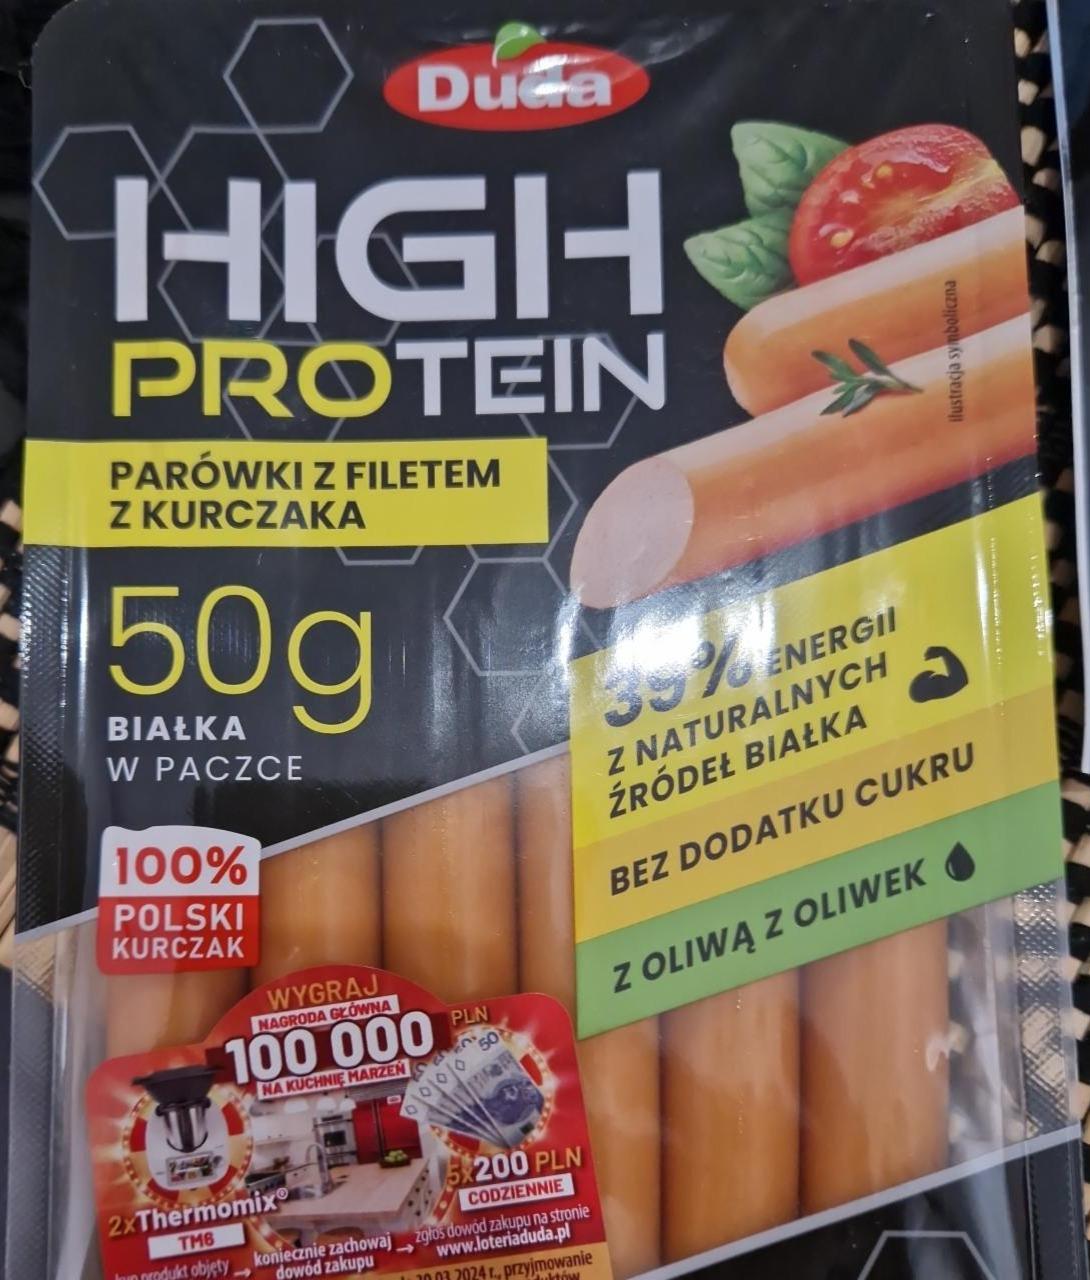 Zdjęcia - High Protein parówki z filetem z kurczaka Duda